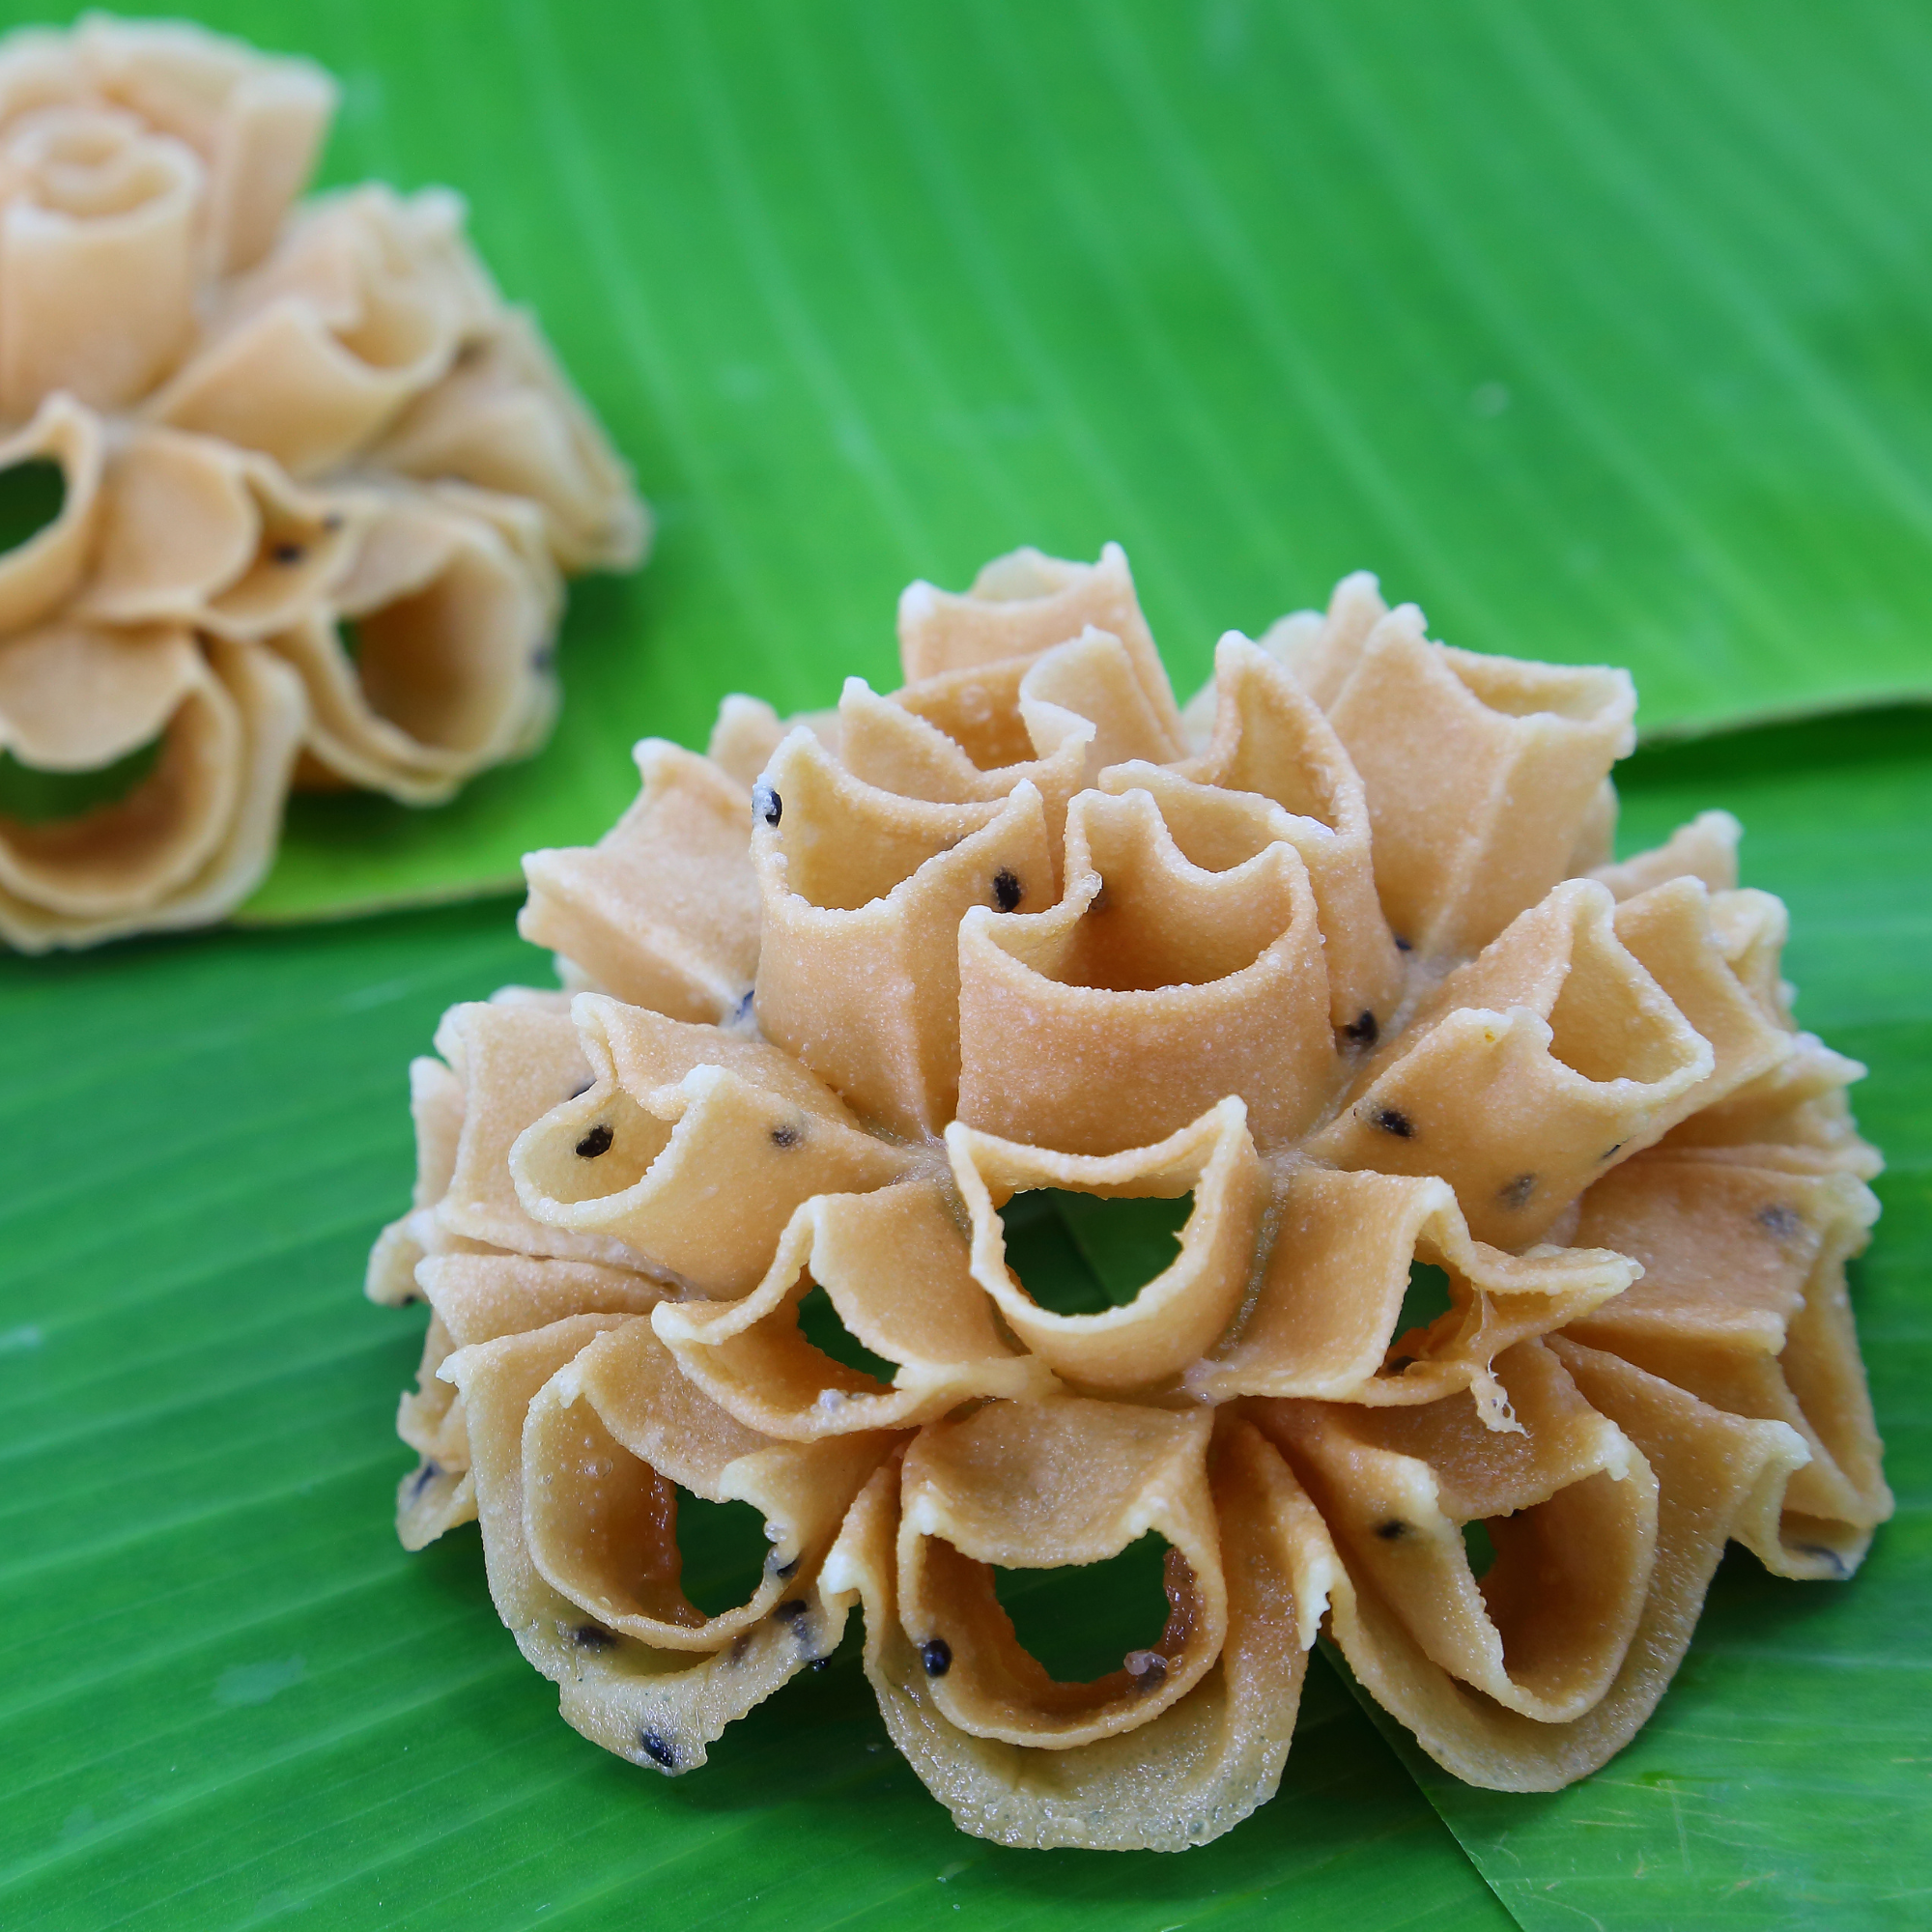 Thai Lao Lotus-Rosette Flower Cookie Dessert Recipe (Dok Jok, Dok Bua)